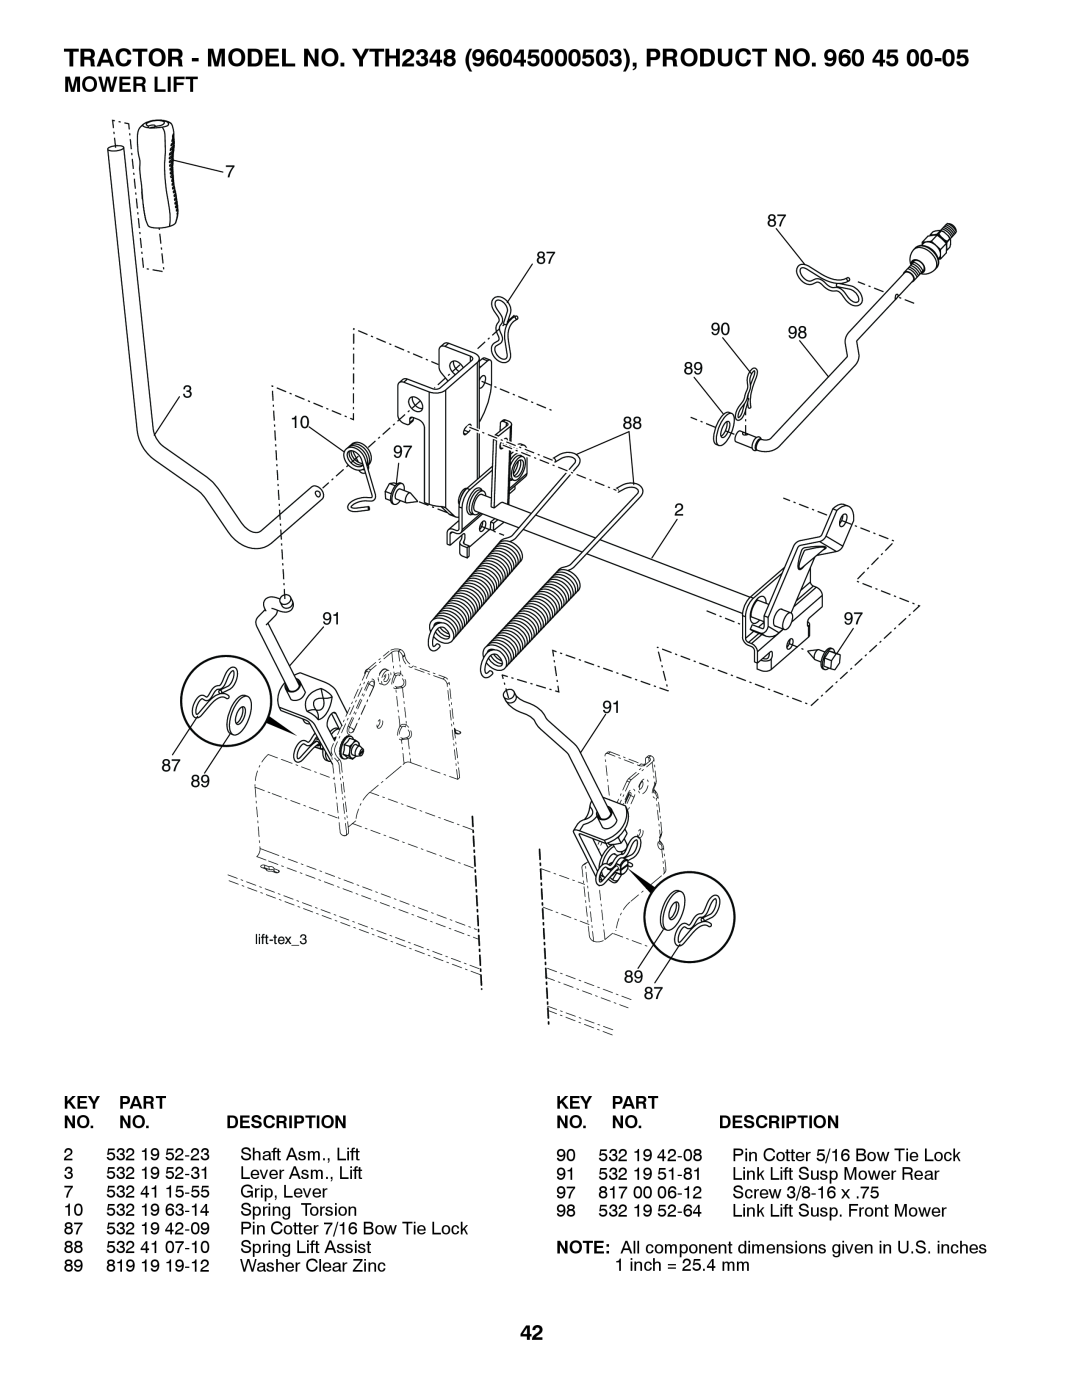 Husqvarna owner manual Mower Lift, TRACTOR - MODEL NO. YTH2348 96045000503, PRODUCT NO. 960, Part, Description 